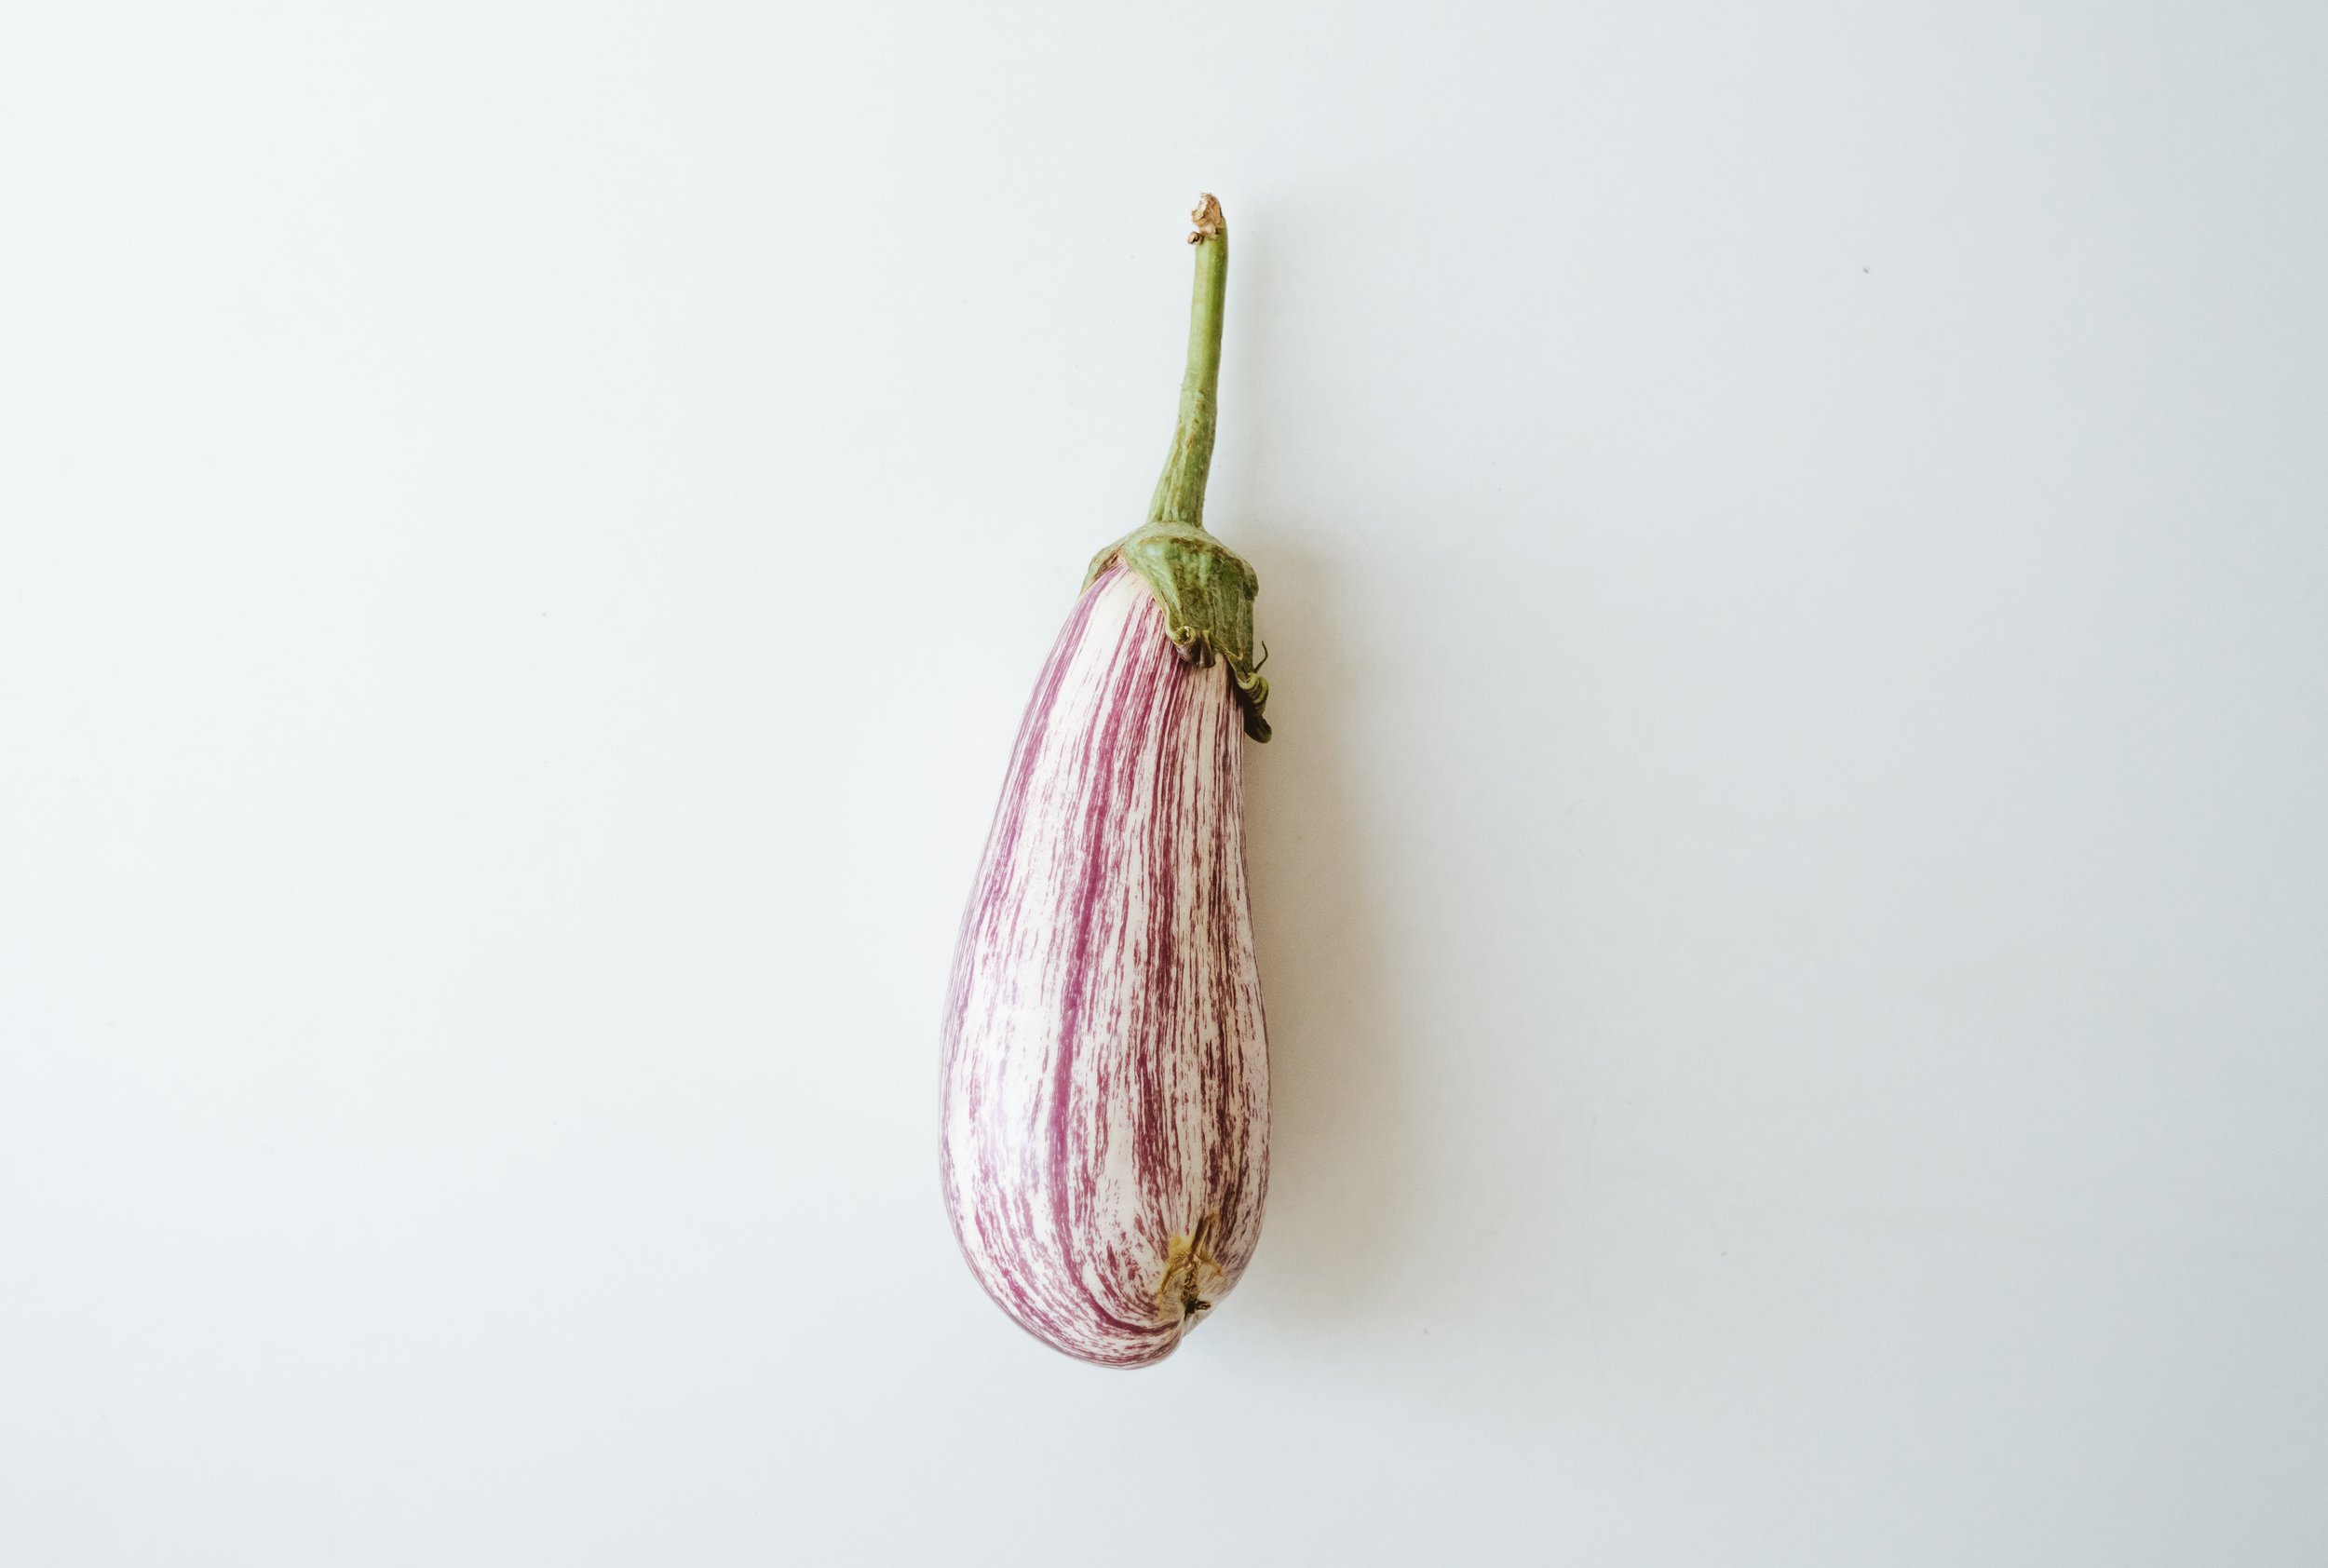 eggplant-food-vegetable-1340856.jpg